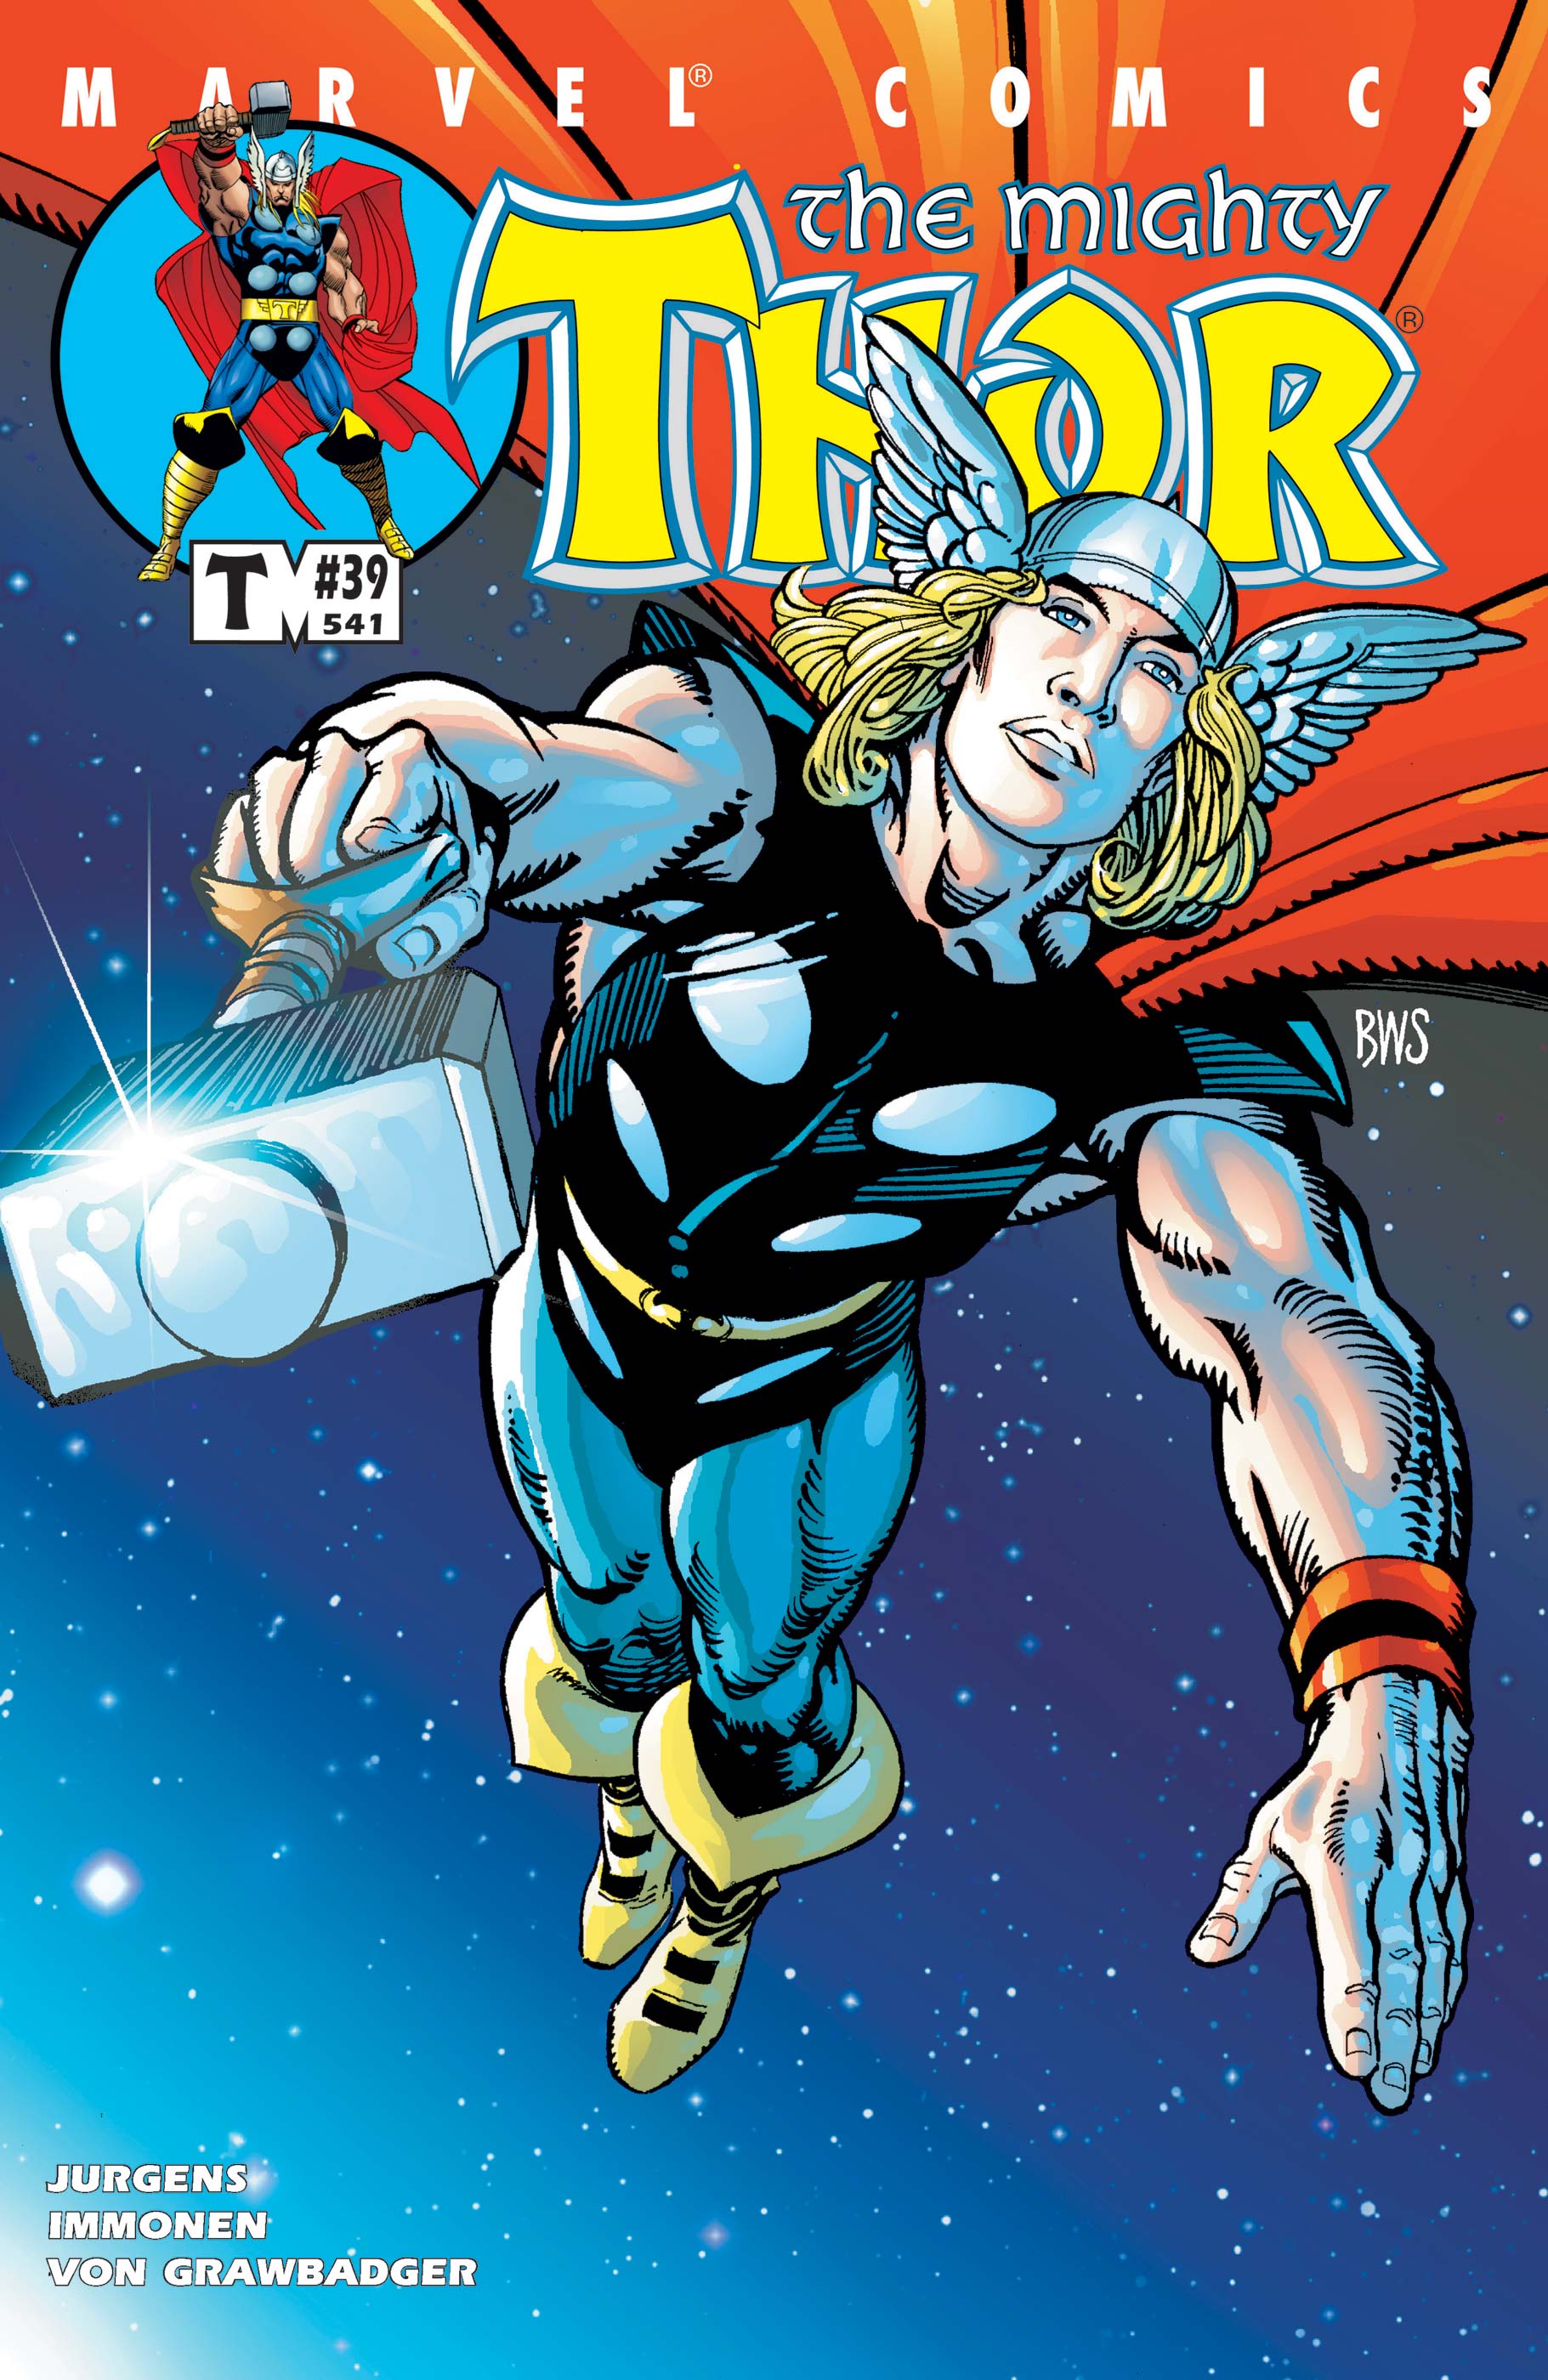 Thor Vol. I: Death of Odin (Trade Paperback)